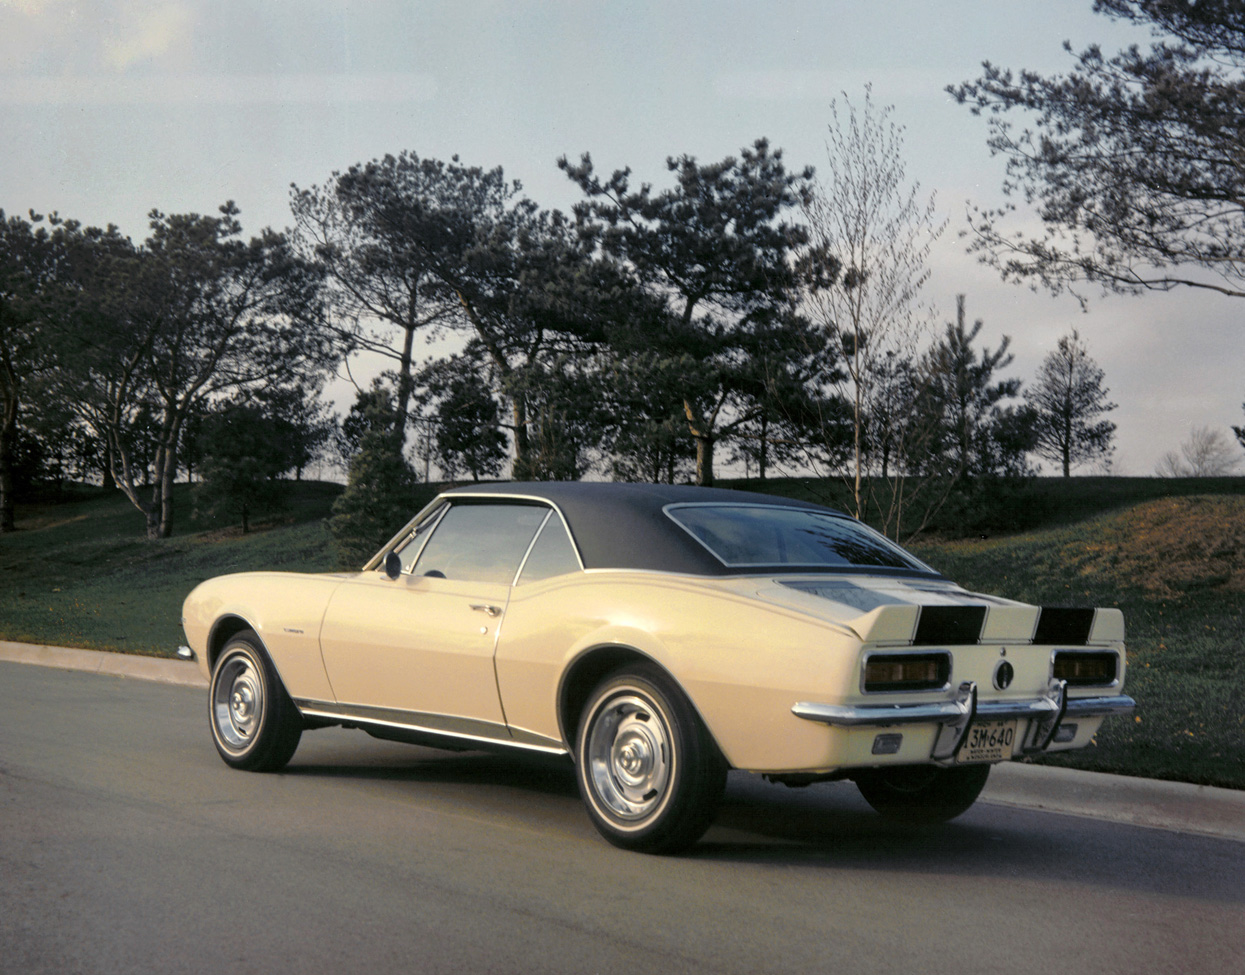 トランスフォーマー4 登場車種公開 バンブルビーは改造版1967年初代カマロに Clicccar Com